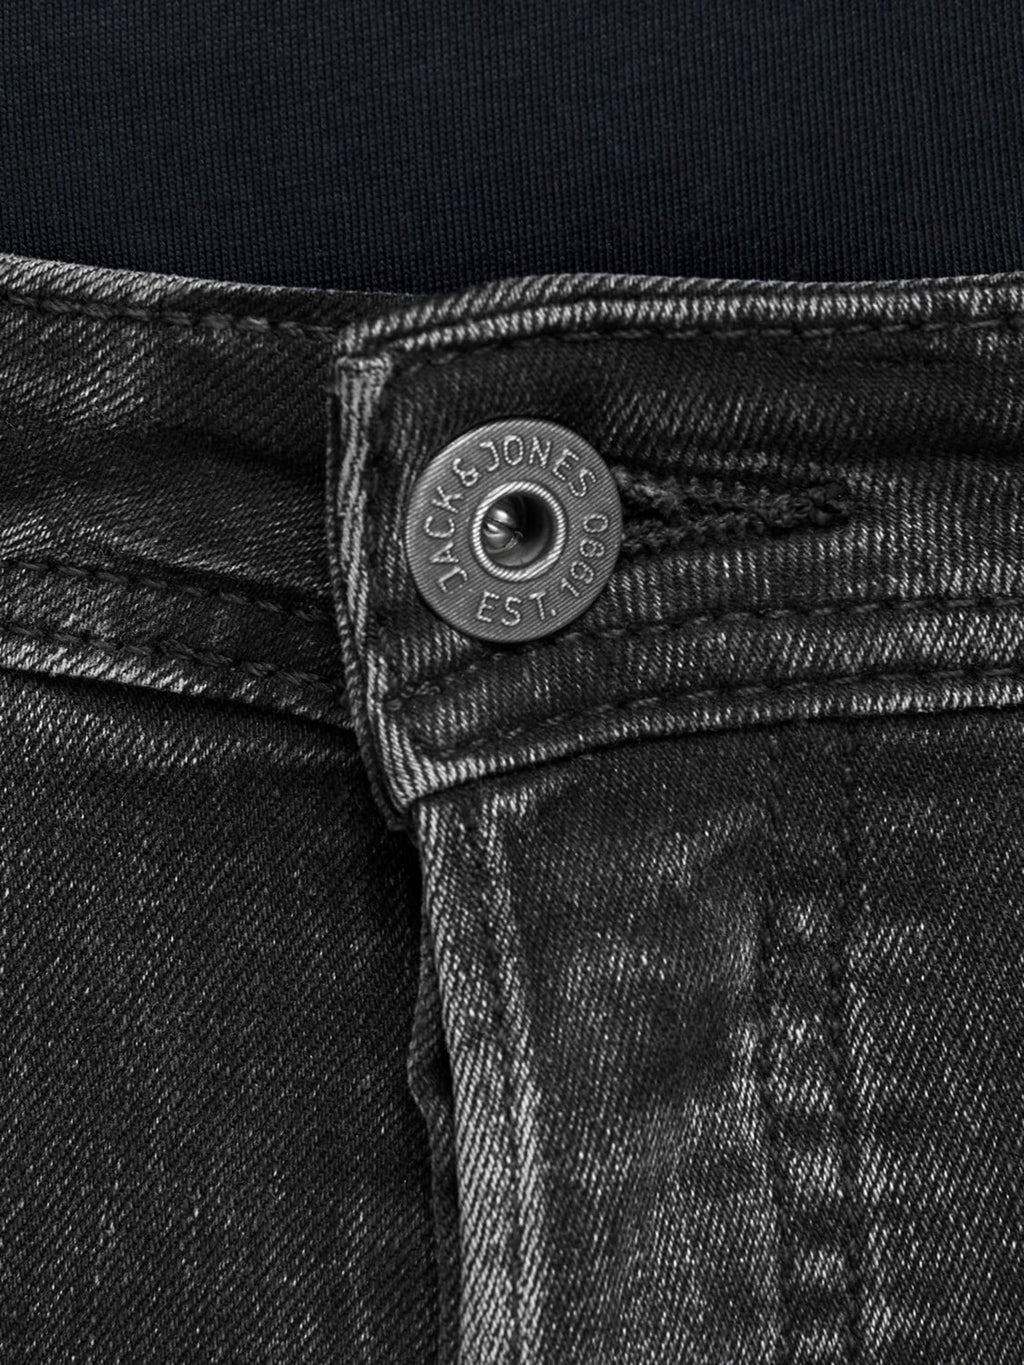 Glenn Original Jeans - Sort Denim